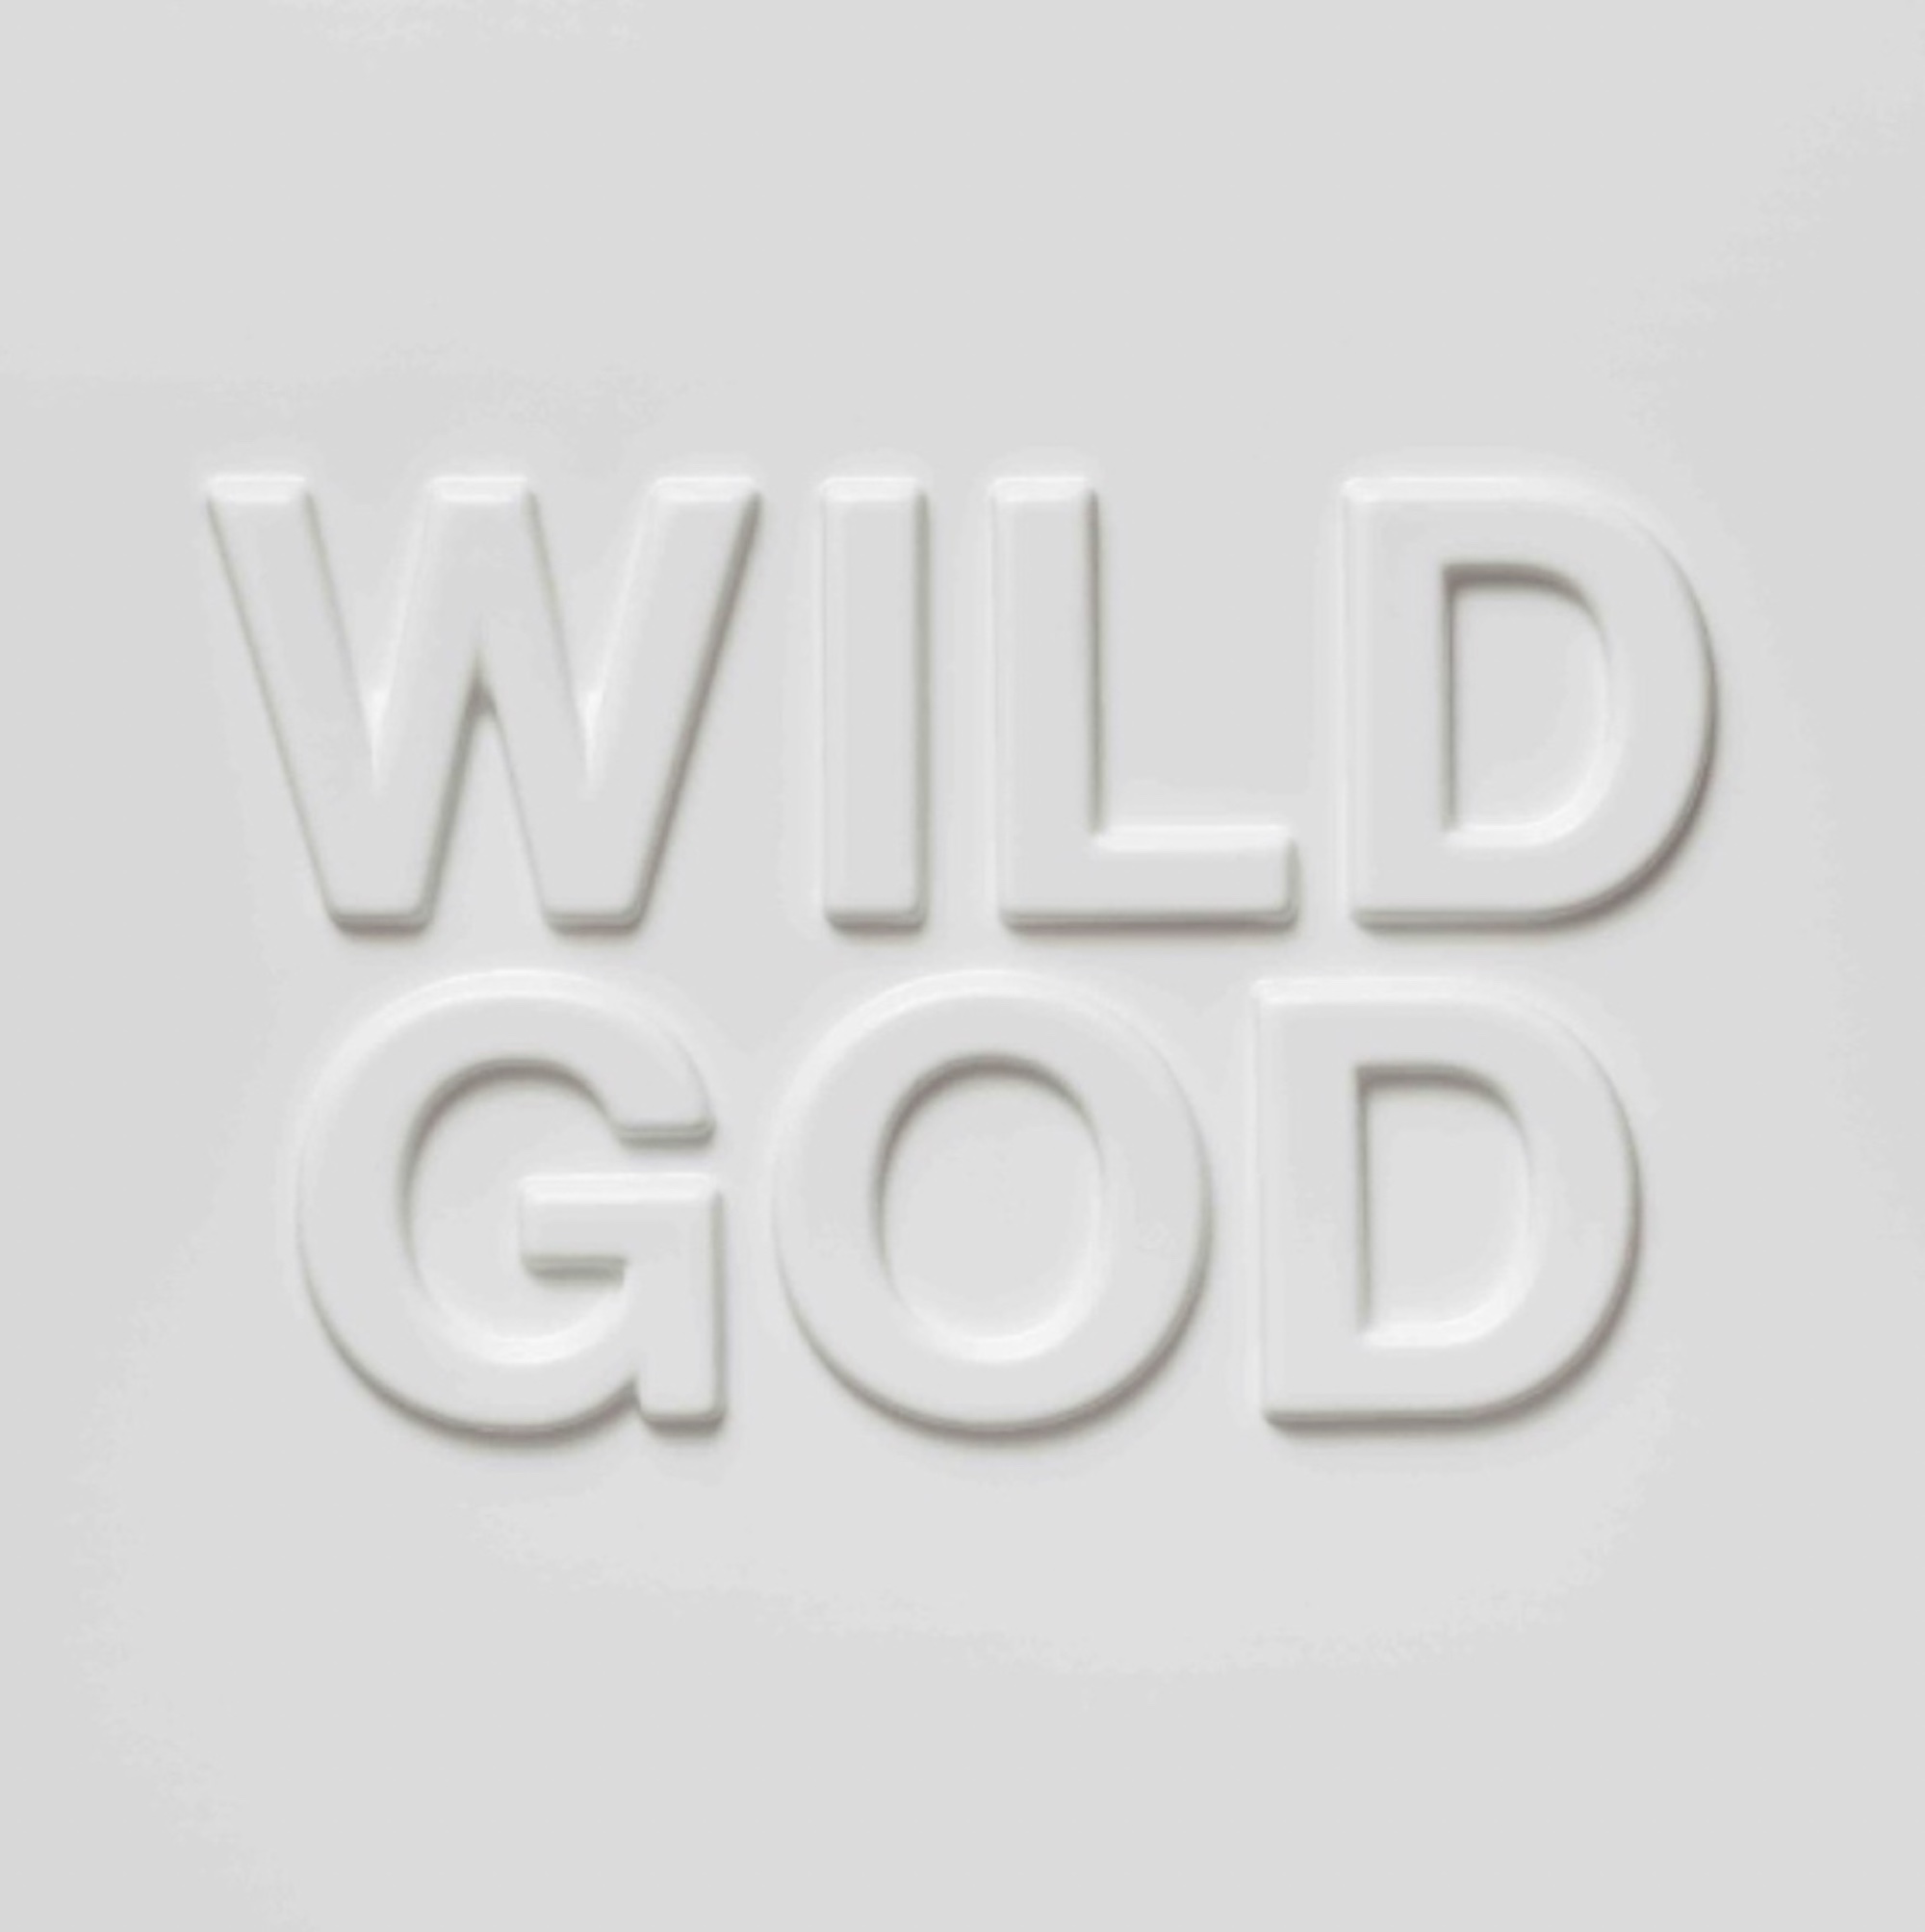 'Wild God' album artwork